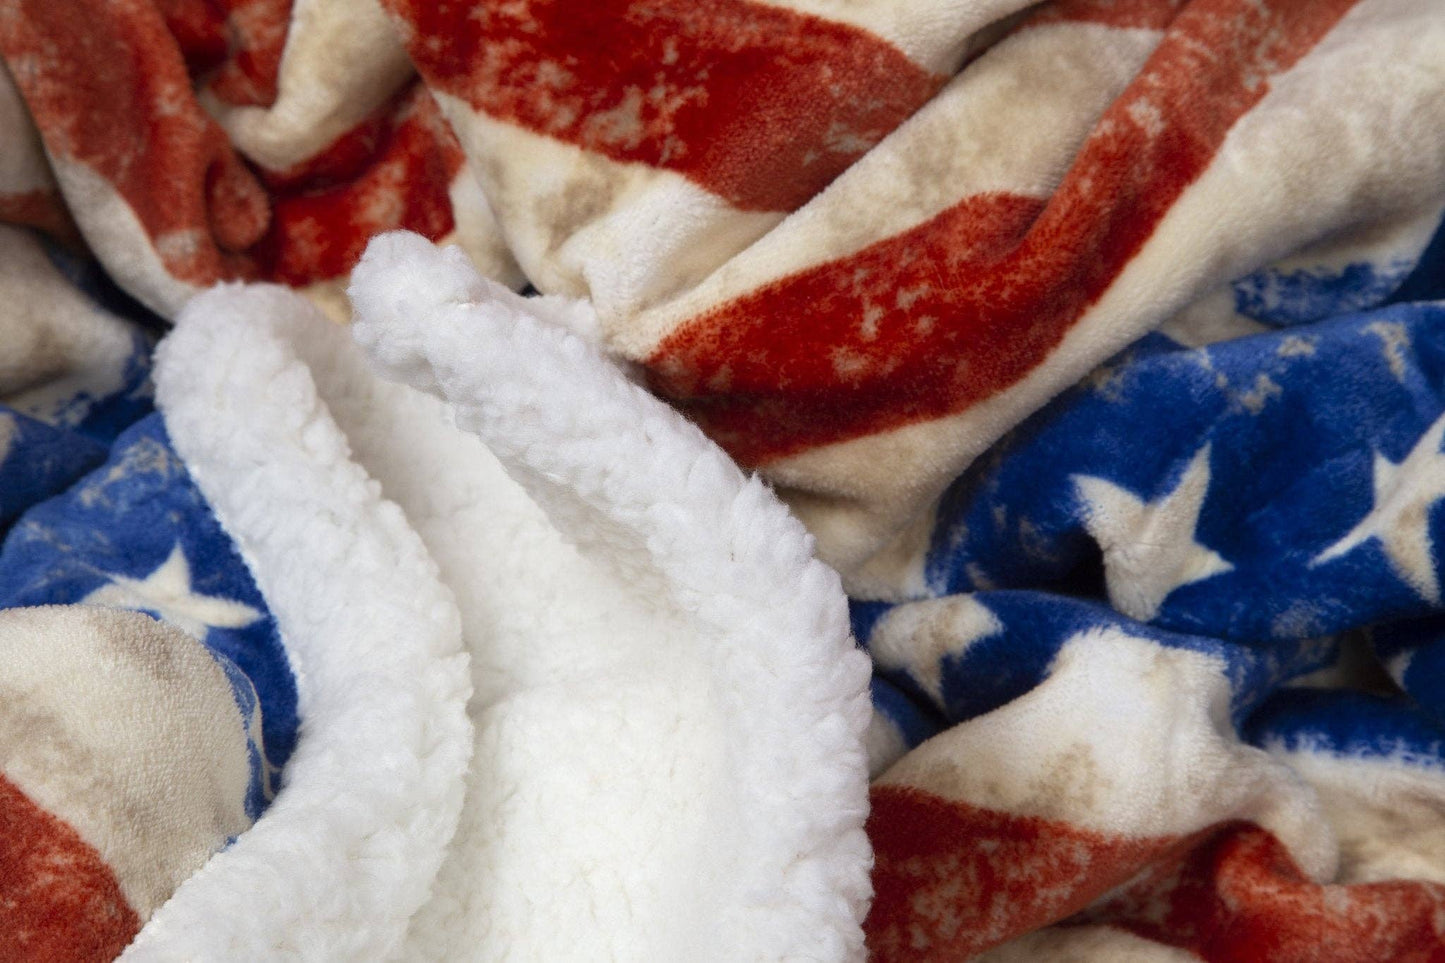 Wrangler Stars & Stripes American Flag Plush Fur Sherpa Fleece Blanket